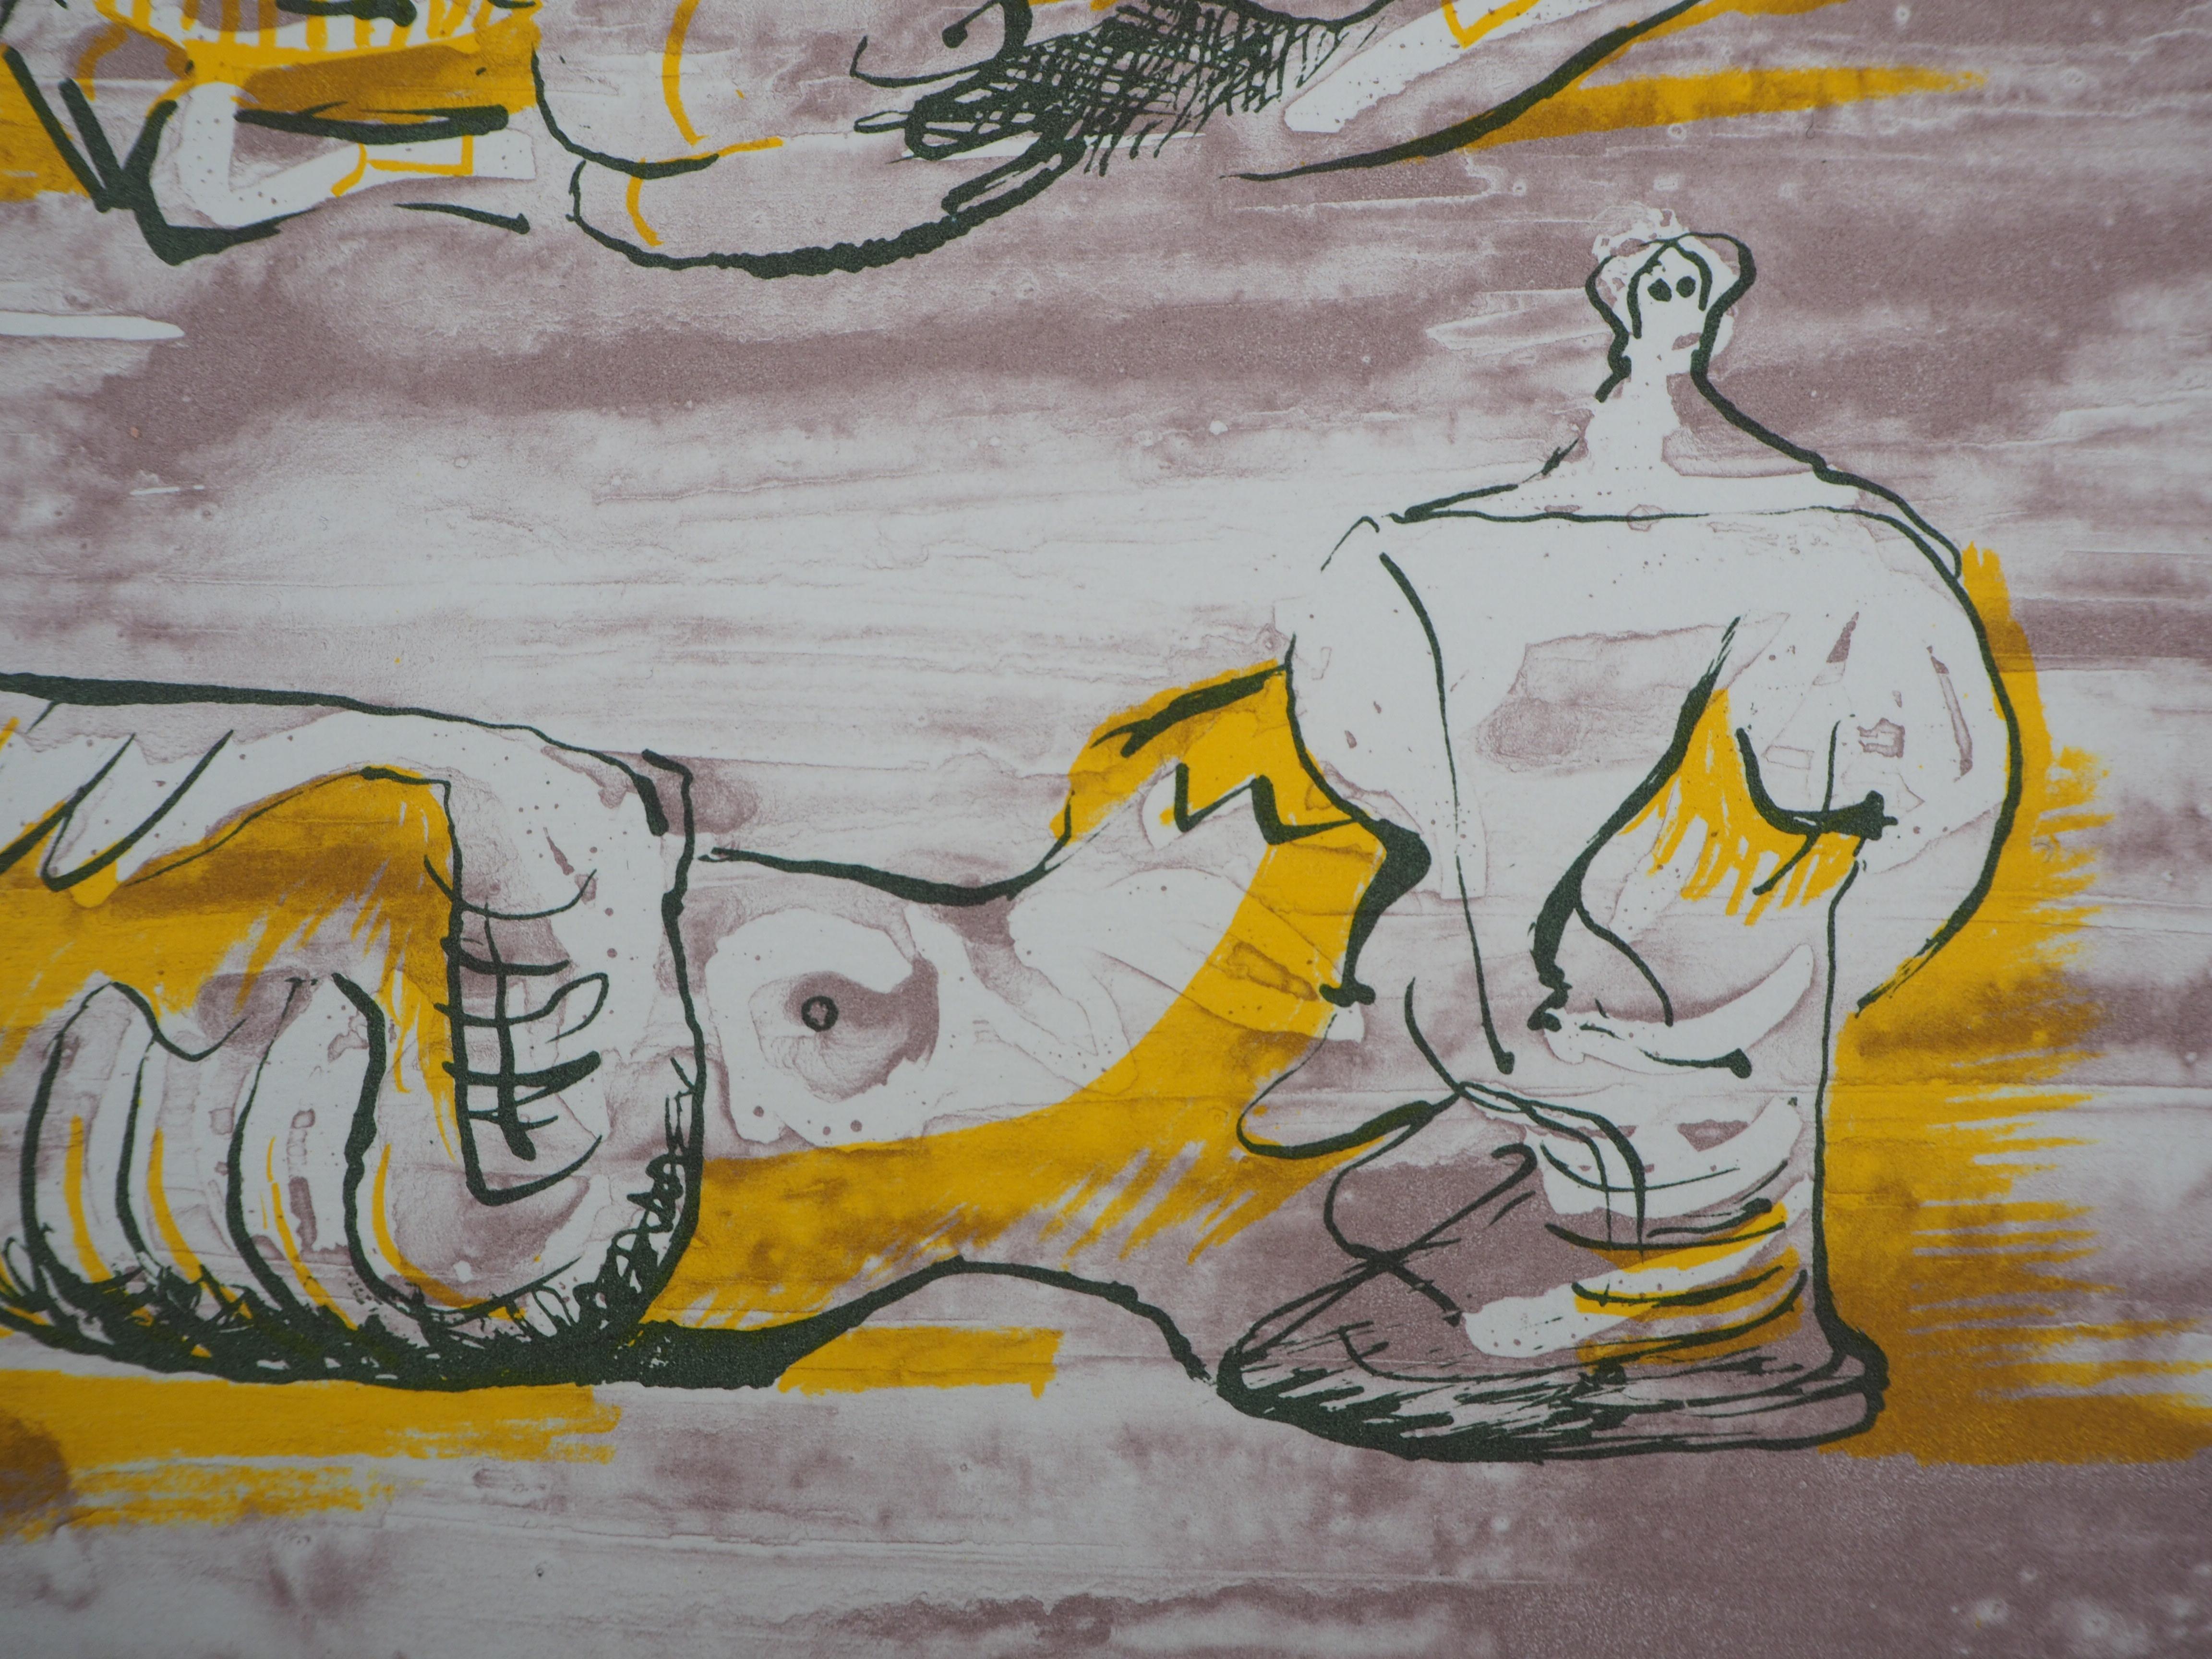 Henry MOORE
Trois nus couchés, 1971

Lithographie originale (Imprimé dans l'atelier Desjobert).
Sur papier vélin 31 x 24 cm (environ 12 x 10 in)
Publié sous la direction de San Lazarro, 1971

RÉFÉRENCES : Henry Moore Catalogue of Graphic Work, (ed.